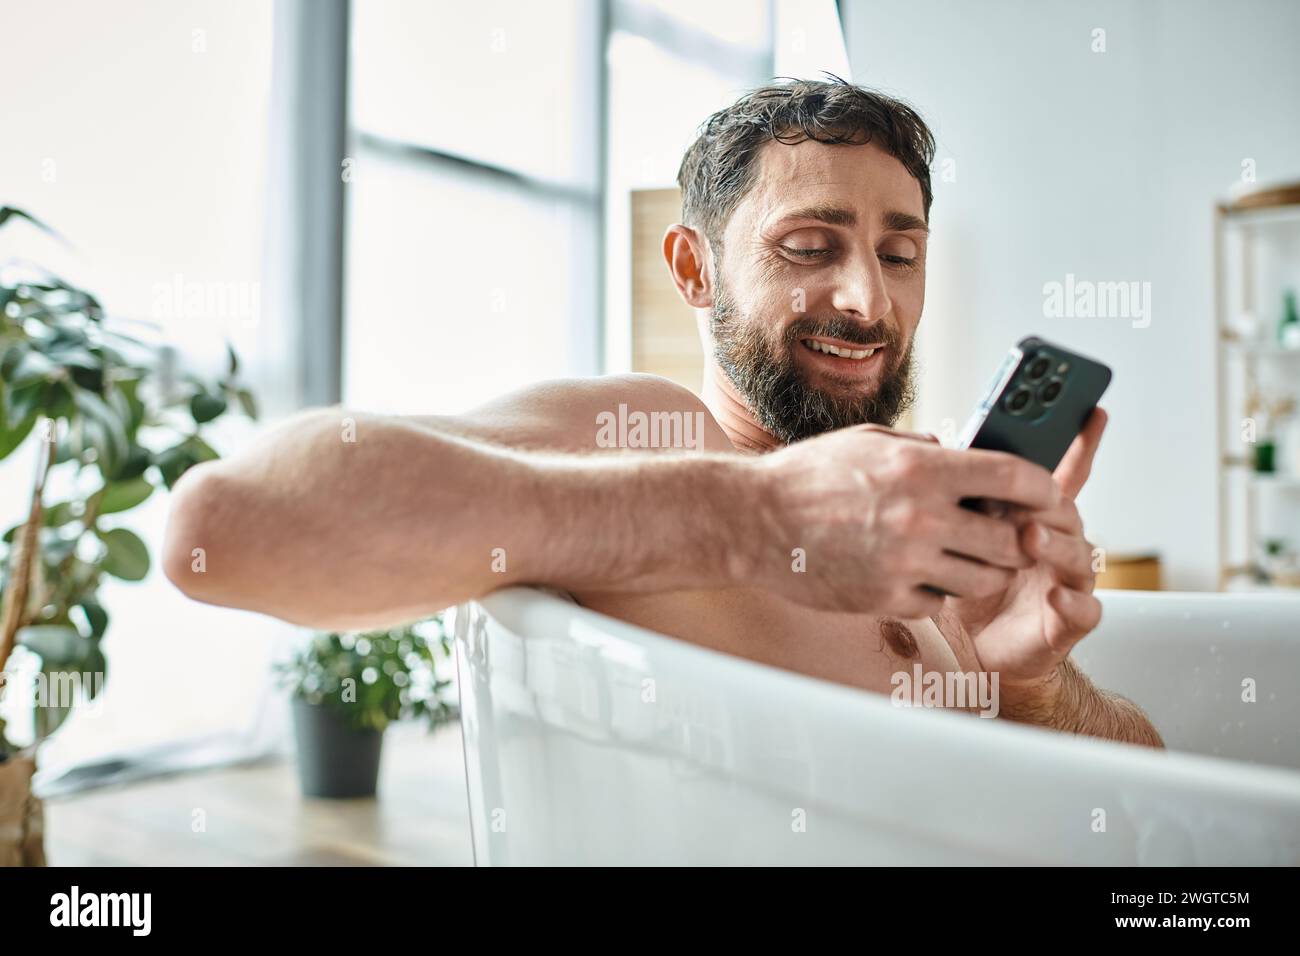 uomo bello e allegro con barba che guarda il suo smartphone mentre è in vasca da bagno, consapevolezza della salute mentale Foto Stock